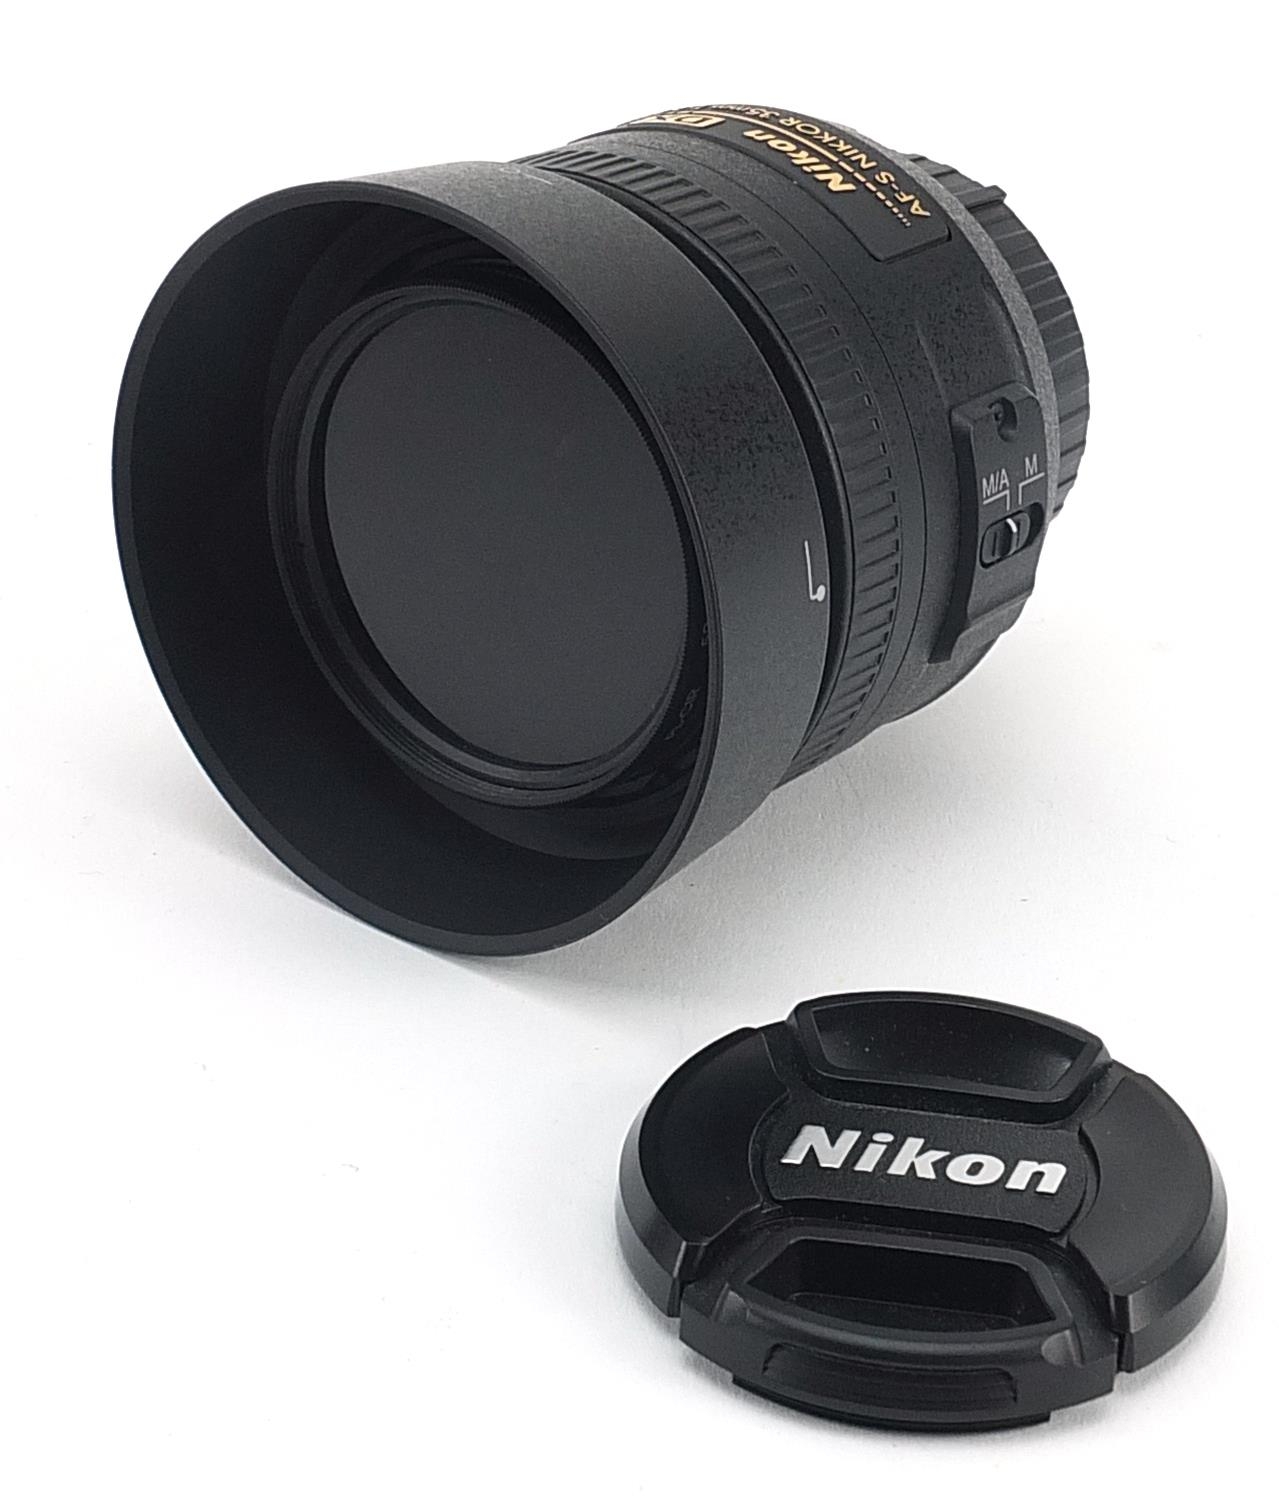 Nikon DX camera lens, AF-S Nikkor 35mm